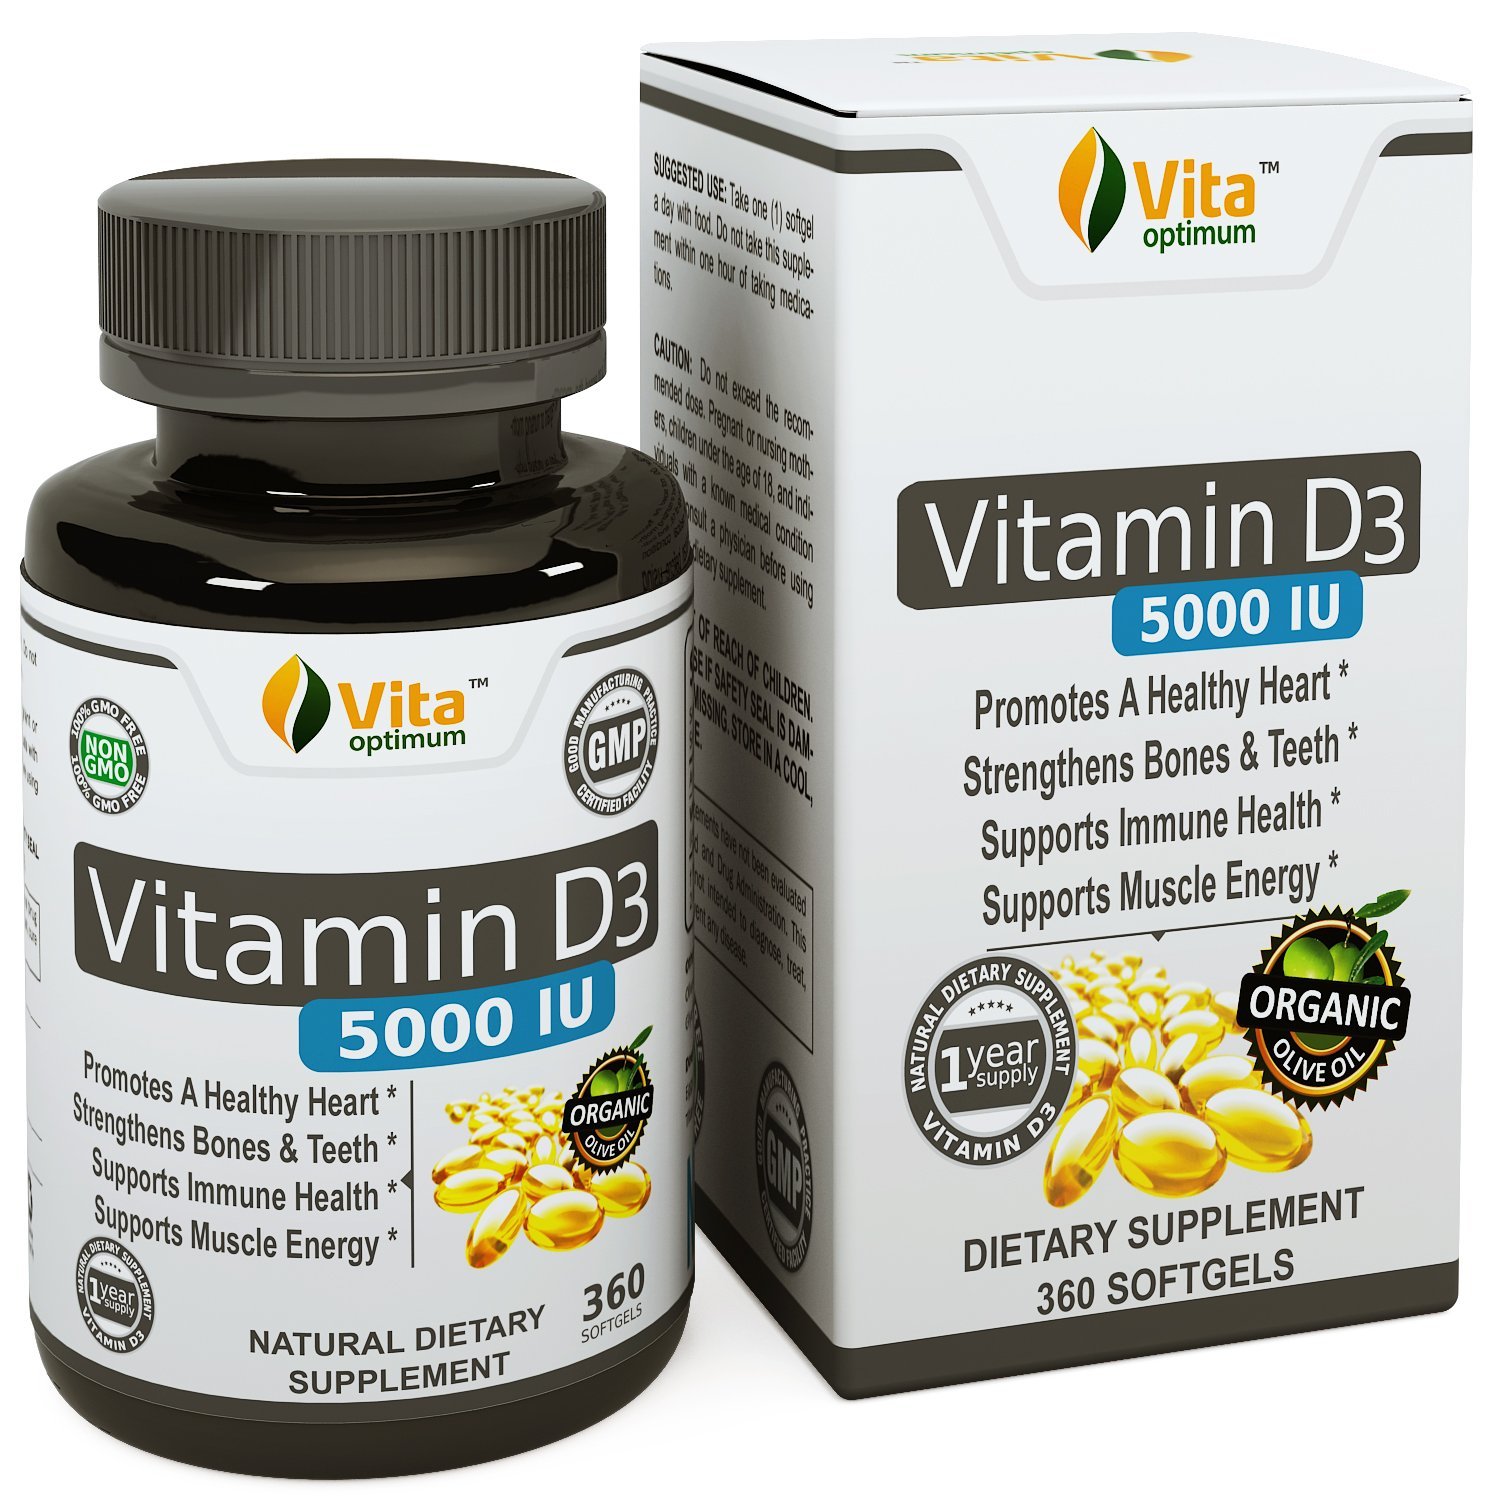 Viên uống bổ sung Vitamin D nhãn hiệu Vita optimum